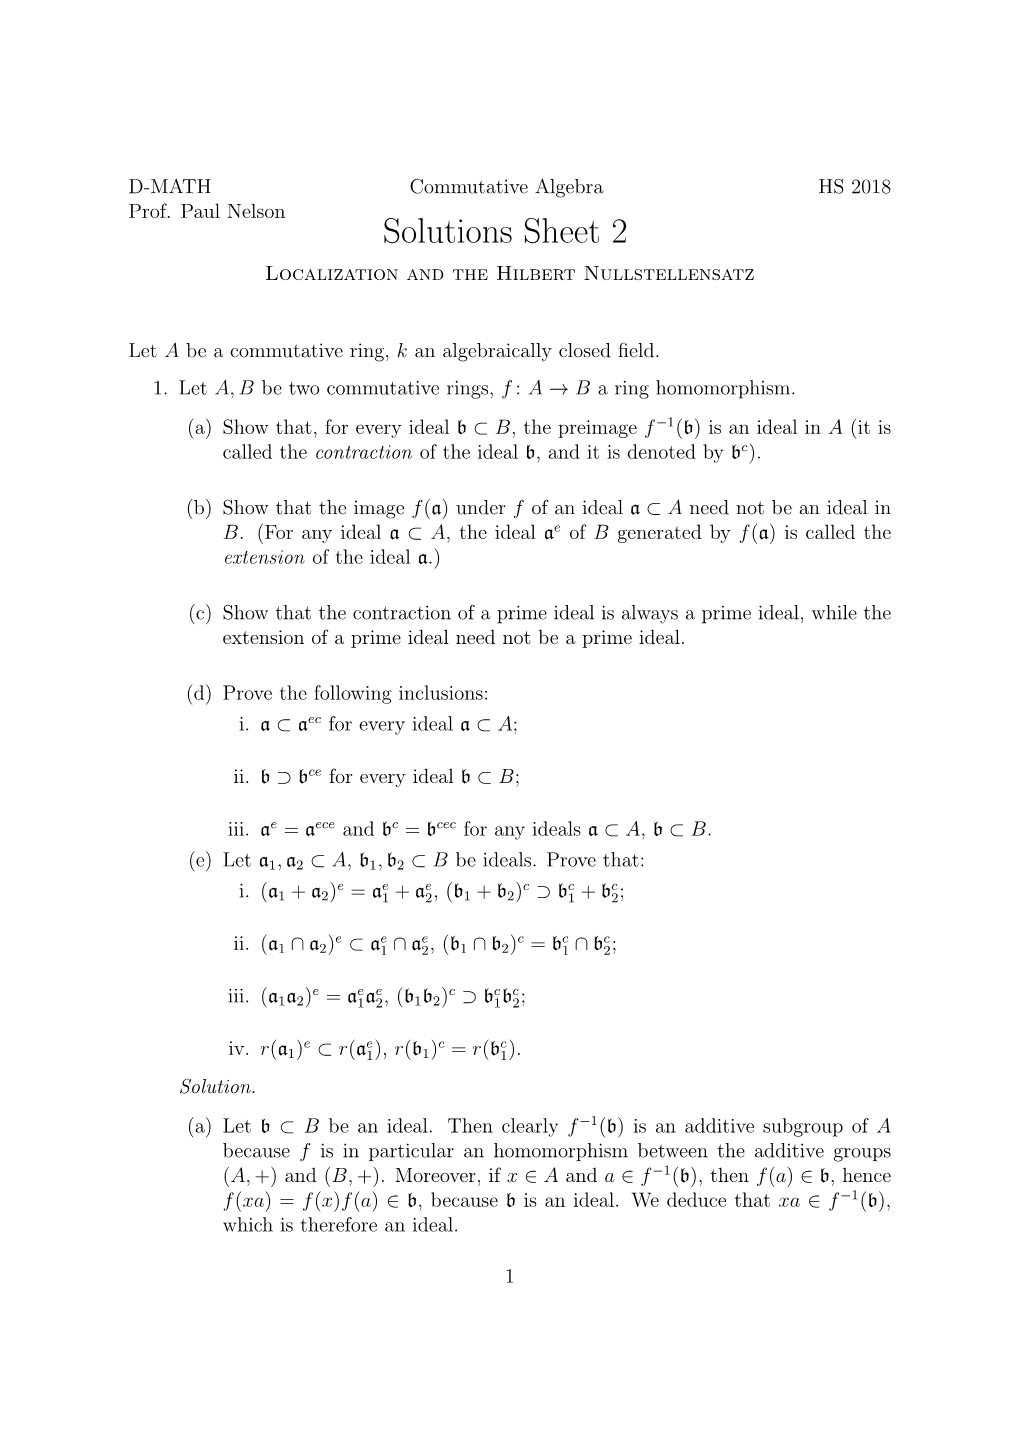 Solutions Sheet 2 Localization and the Hilbert Nullstellensatz